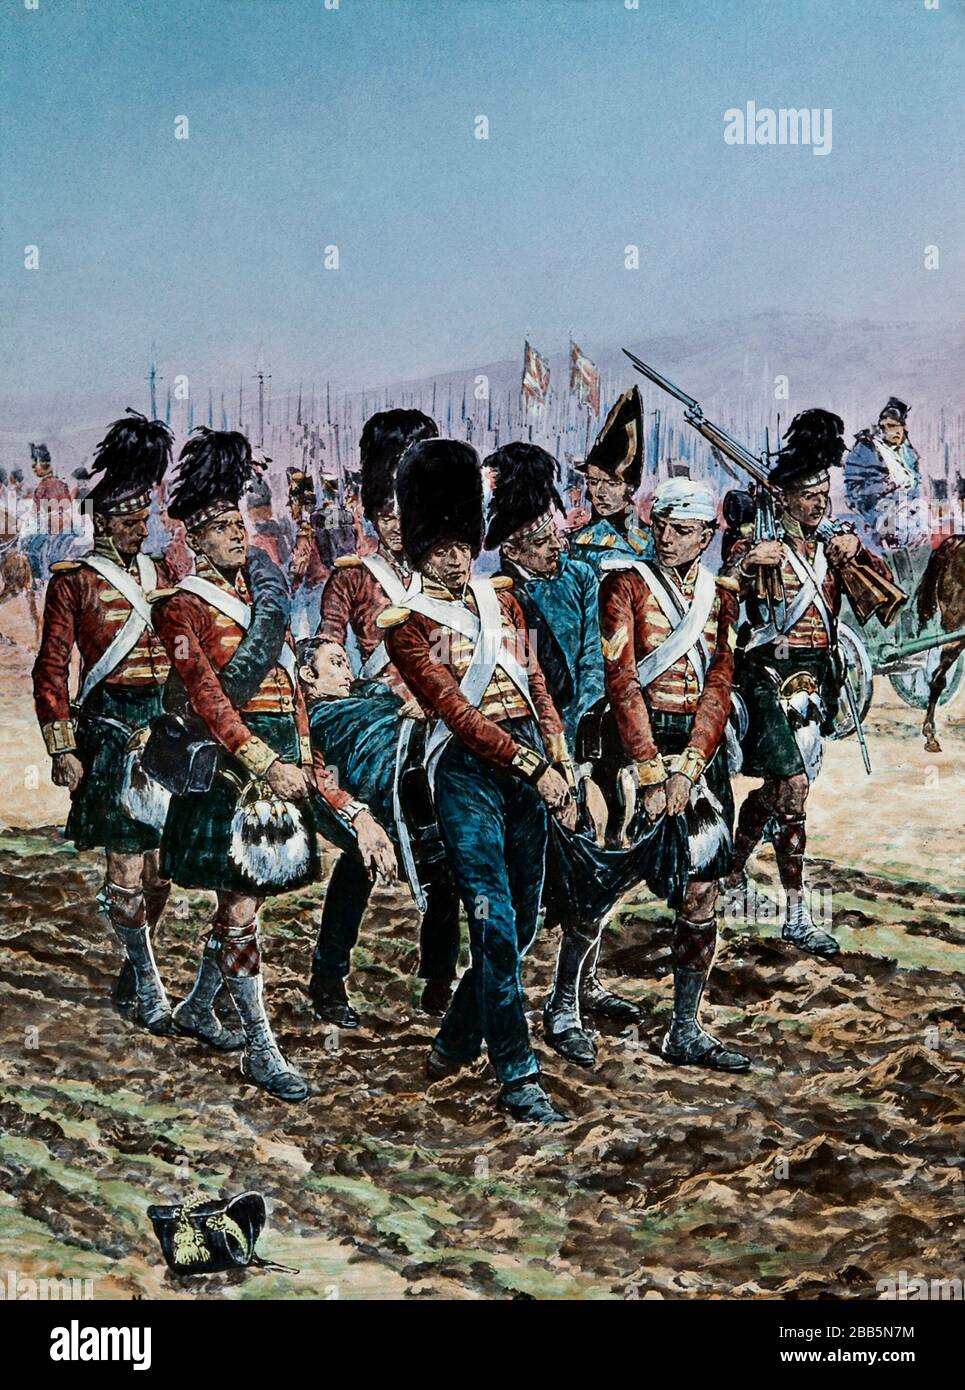 Animationsillustrationen von englischen und französischen Feldzügen und Kriegsgeschauptbildern um 1800, einschließlich der Französischen Revolution und Napoleonischen Kriegen. Diese Illustrationen entstanden um 1900 Stockfoto